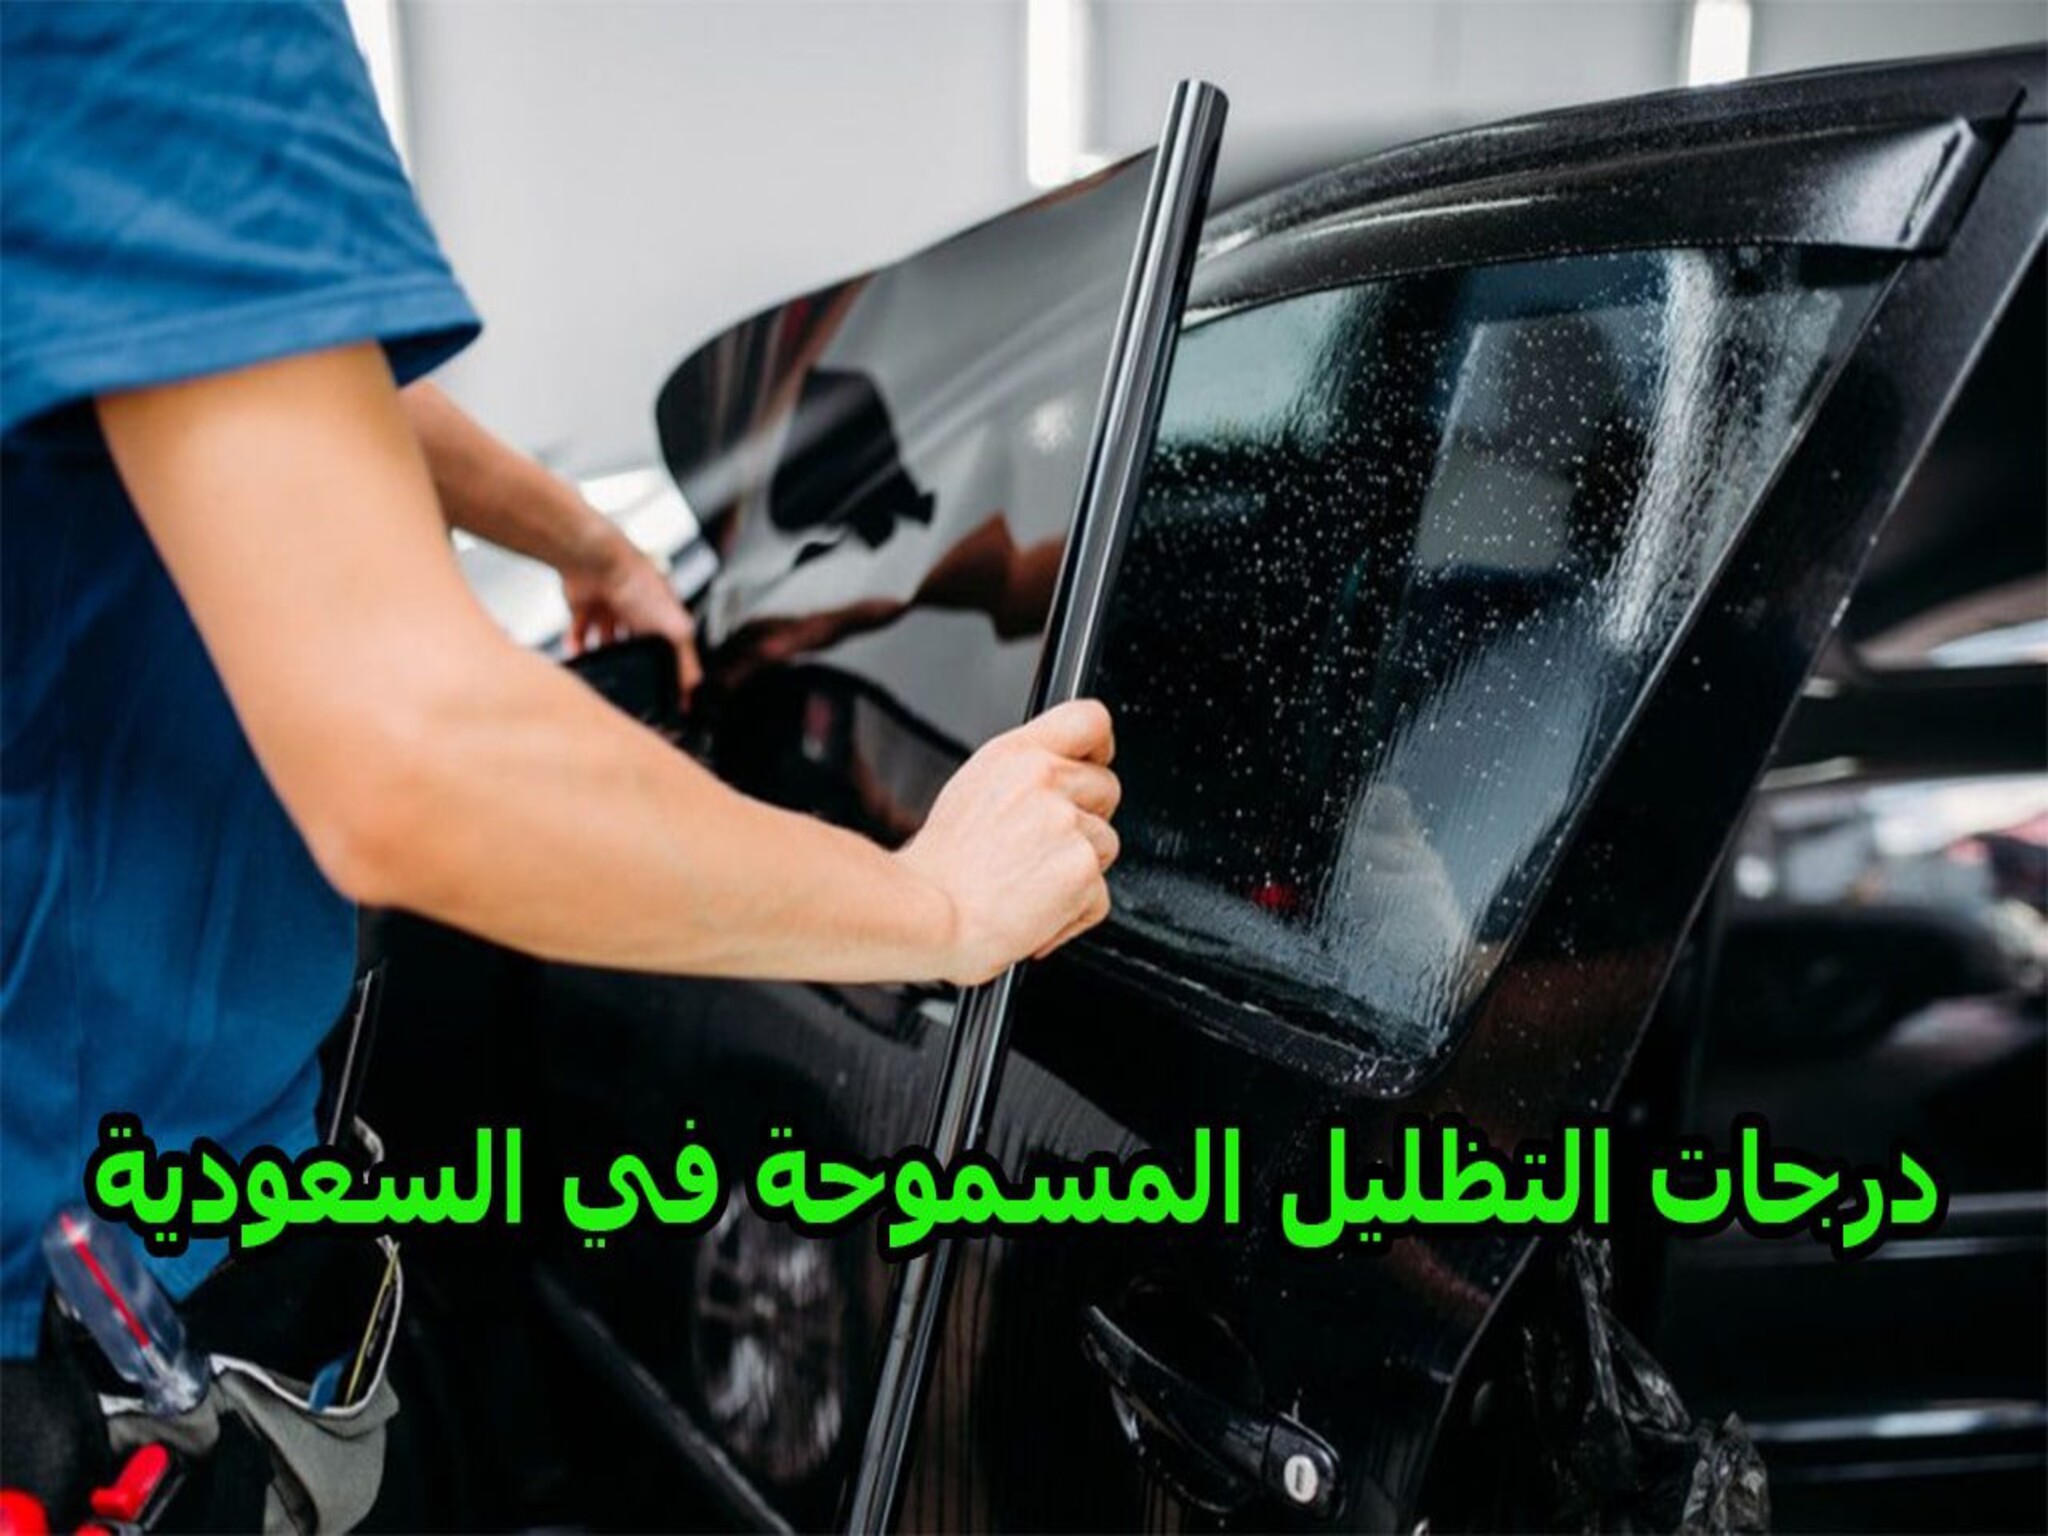 تظليل السيارات في المملكة السعودية مابين المسموح والممنوع 1446هـ